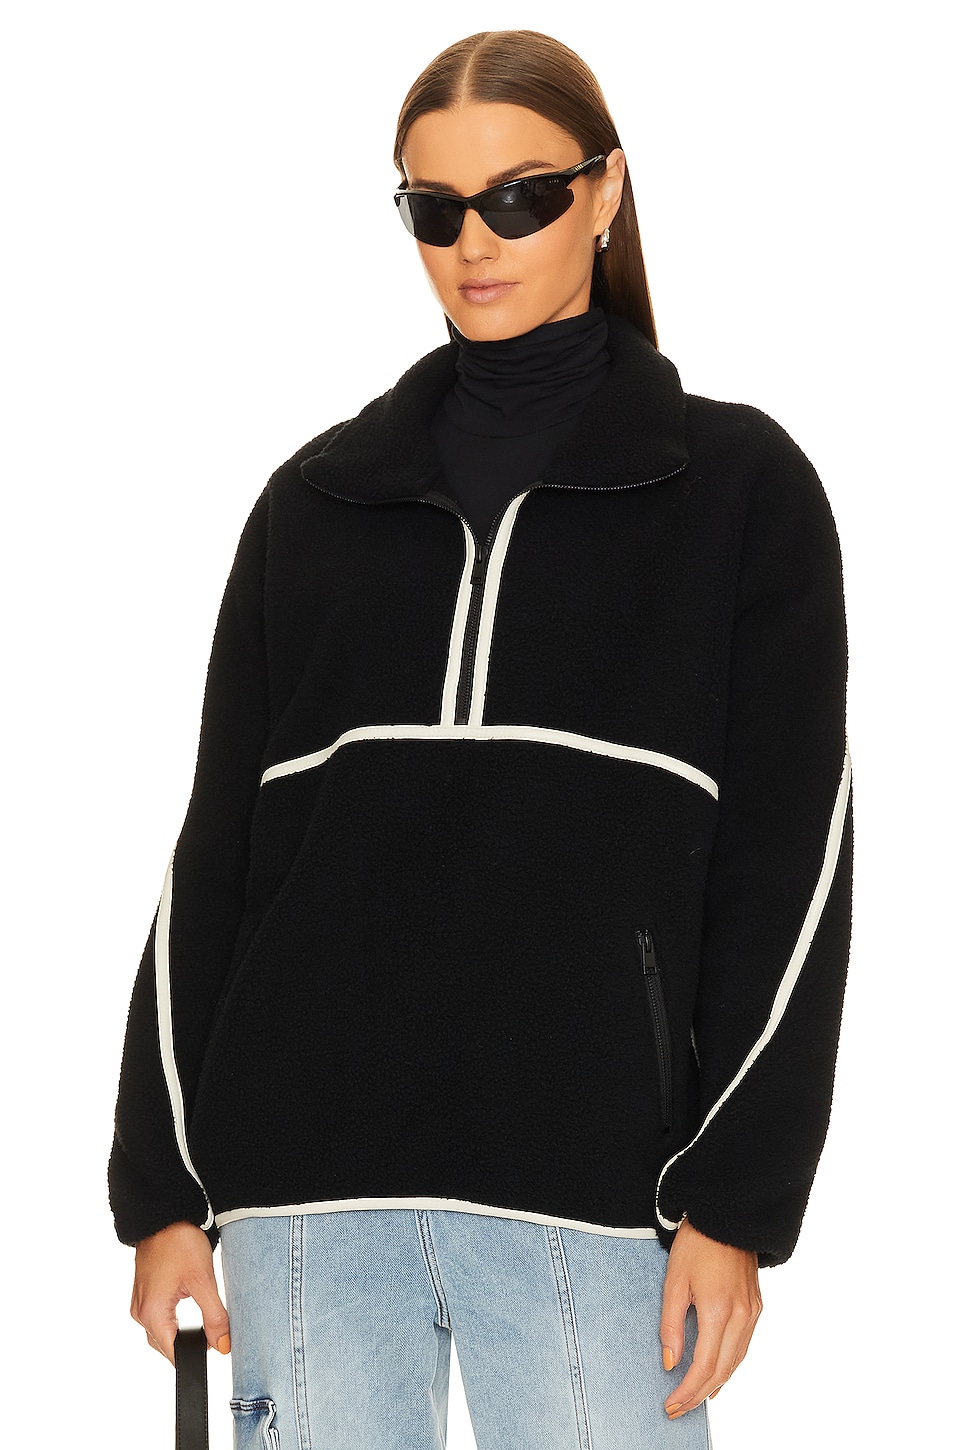 куртка lamarque dustin moto цвет black winter white Куртка LAMARQUE Helsa Fleece, цвет Black & Ivory